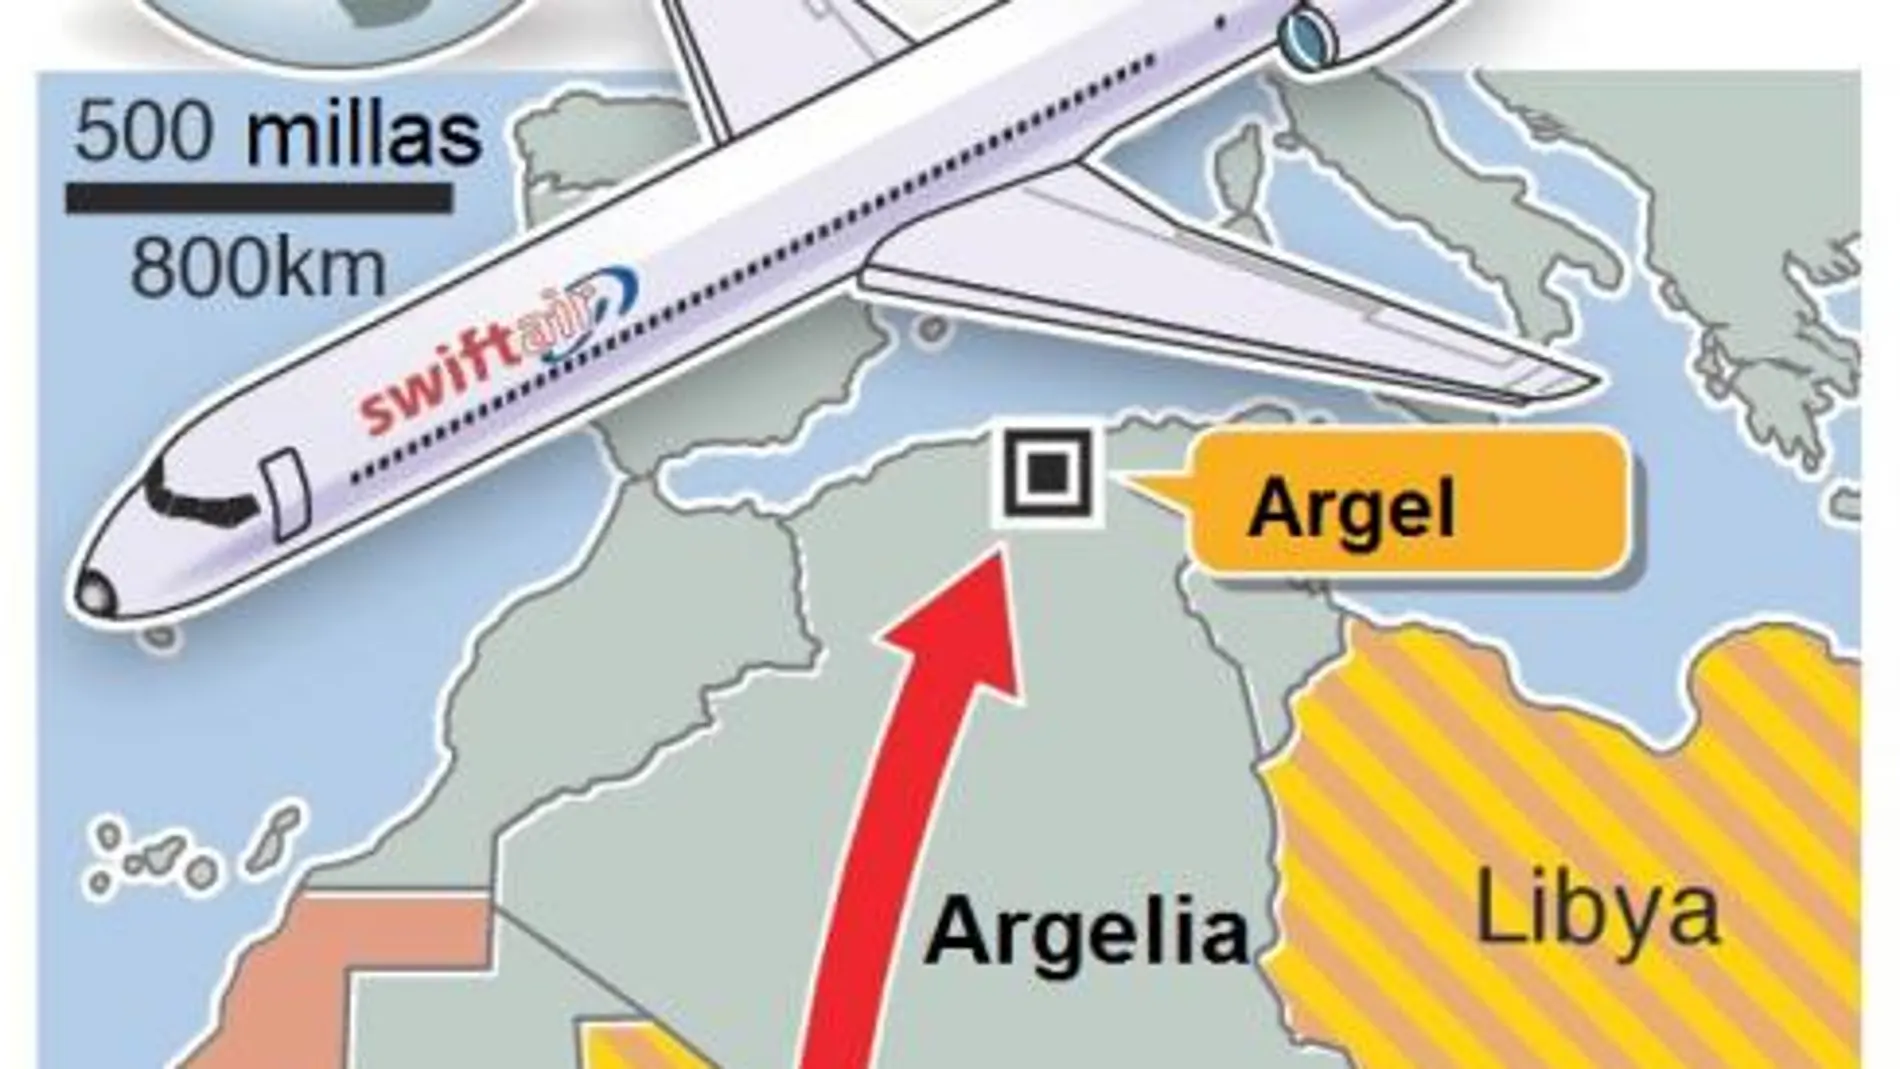 Itinerario del vuelo desaparecido entre Uagadugú y Argel.